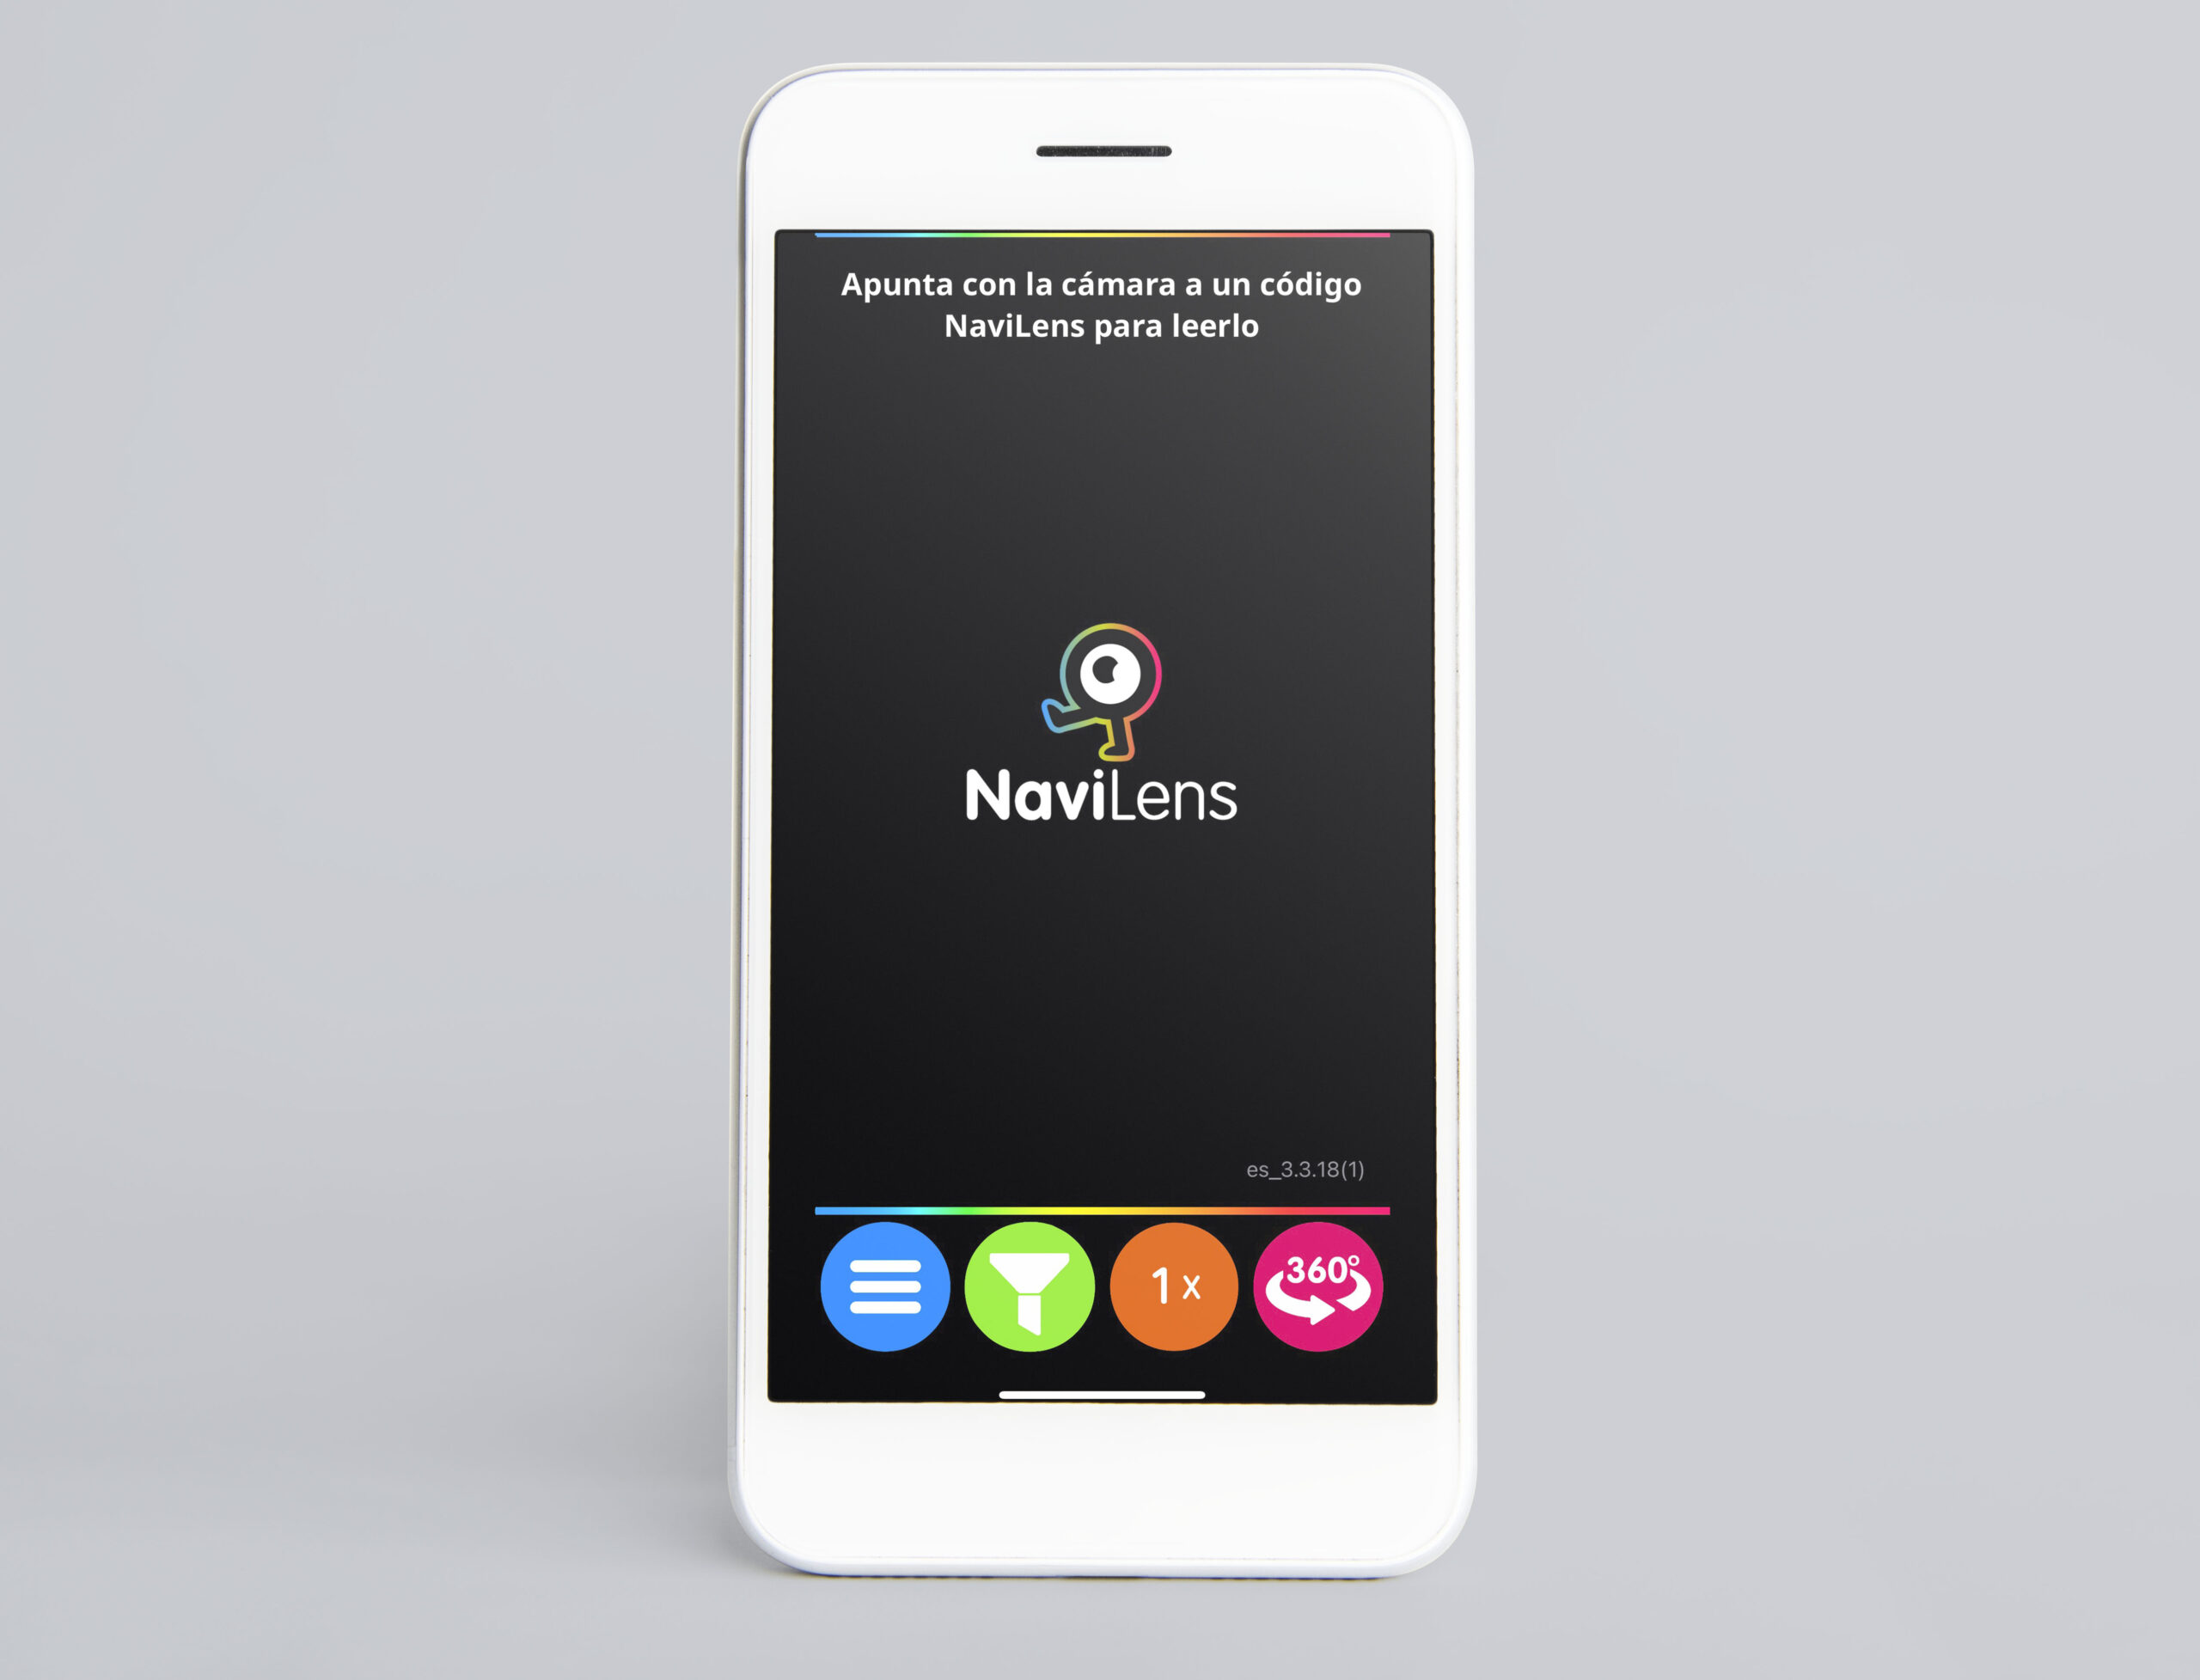 Fotografía de un móvil con la pantalla principal de la aplicación de NaviLens.